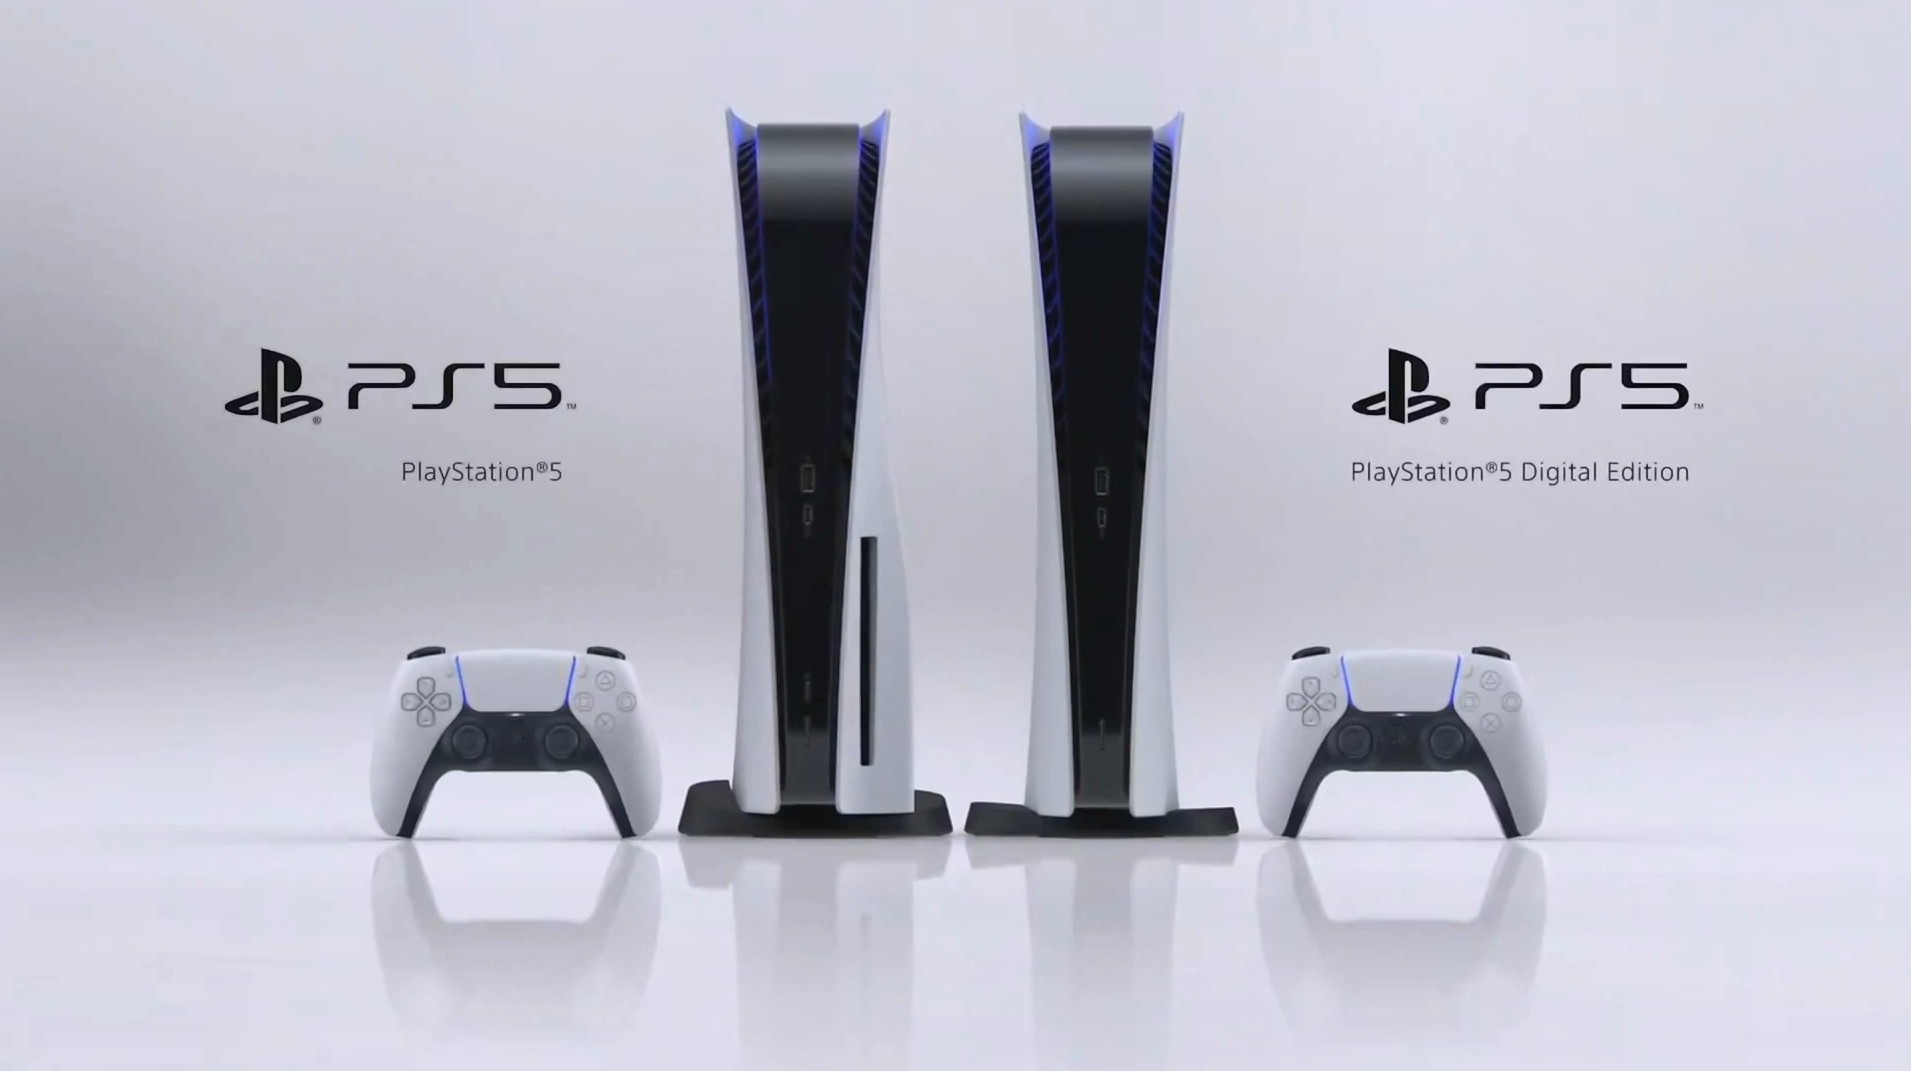 تشير تفاصيل التسعير المسربة إلى أن PlayStation 5 سيبدأ بسعر 399 يورو